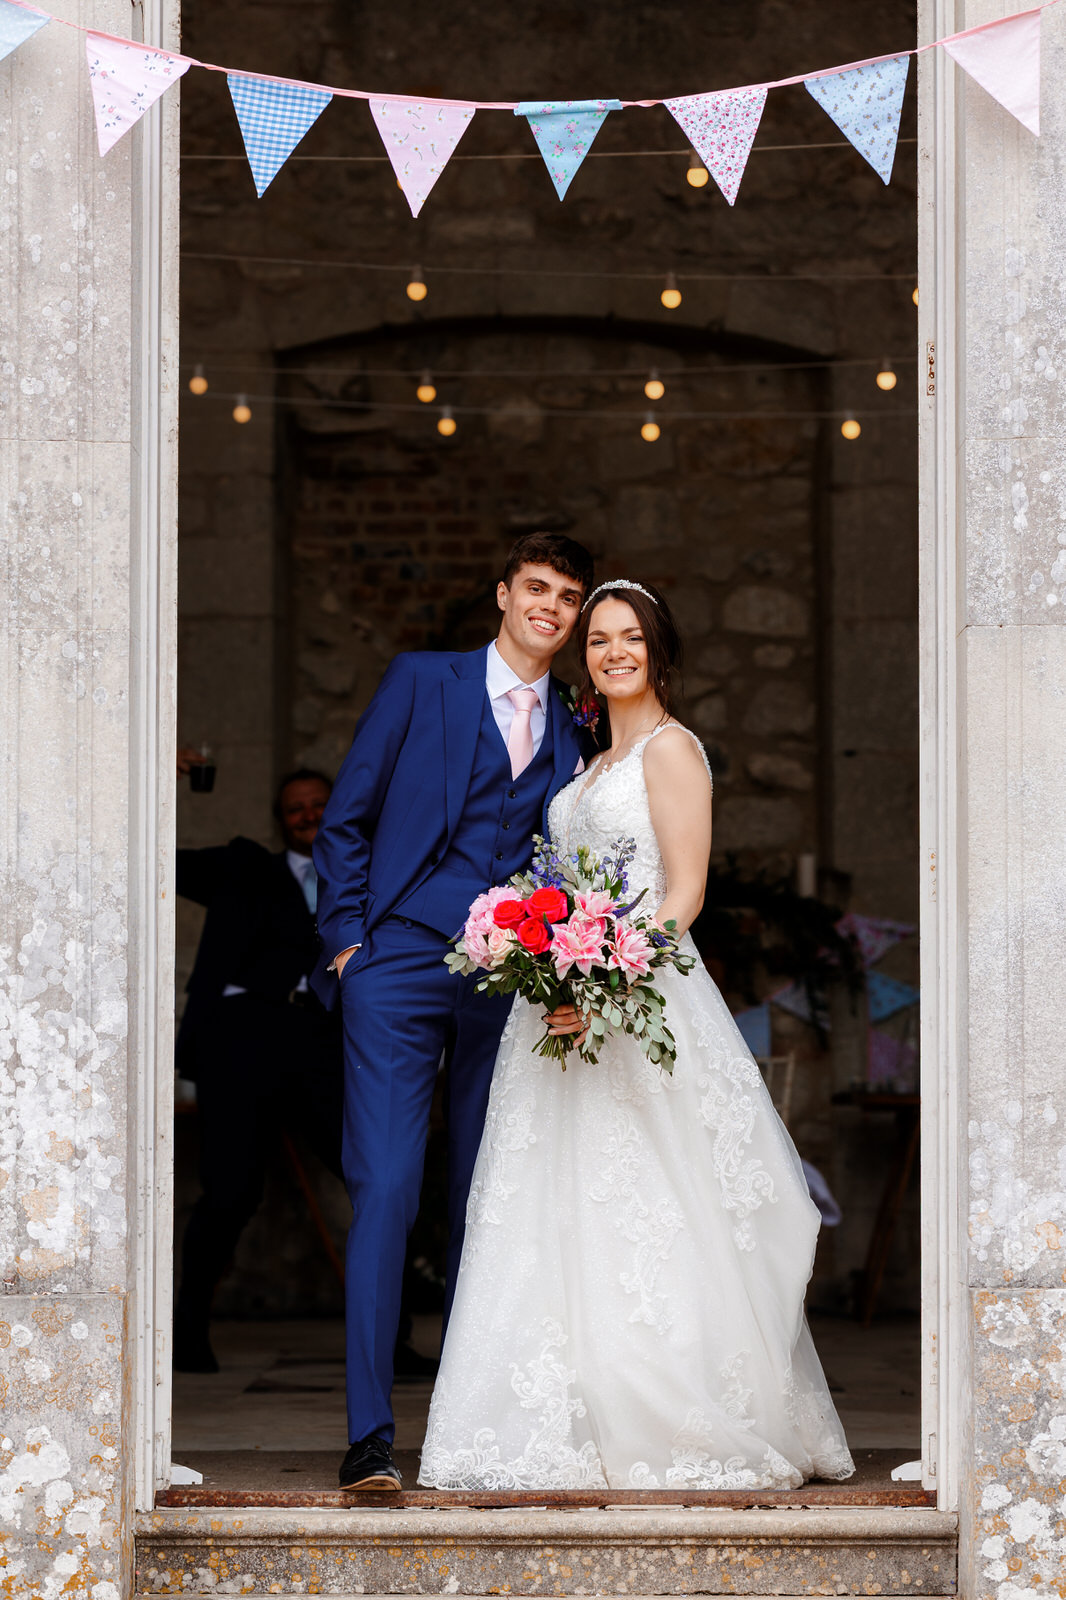 Appuldurcombe House Wedding | Couple in Doorway